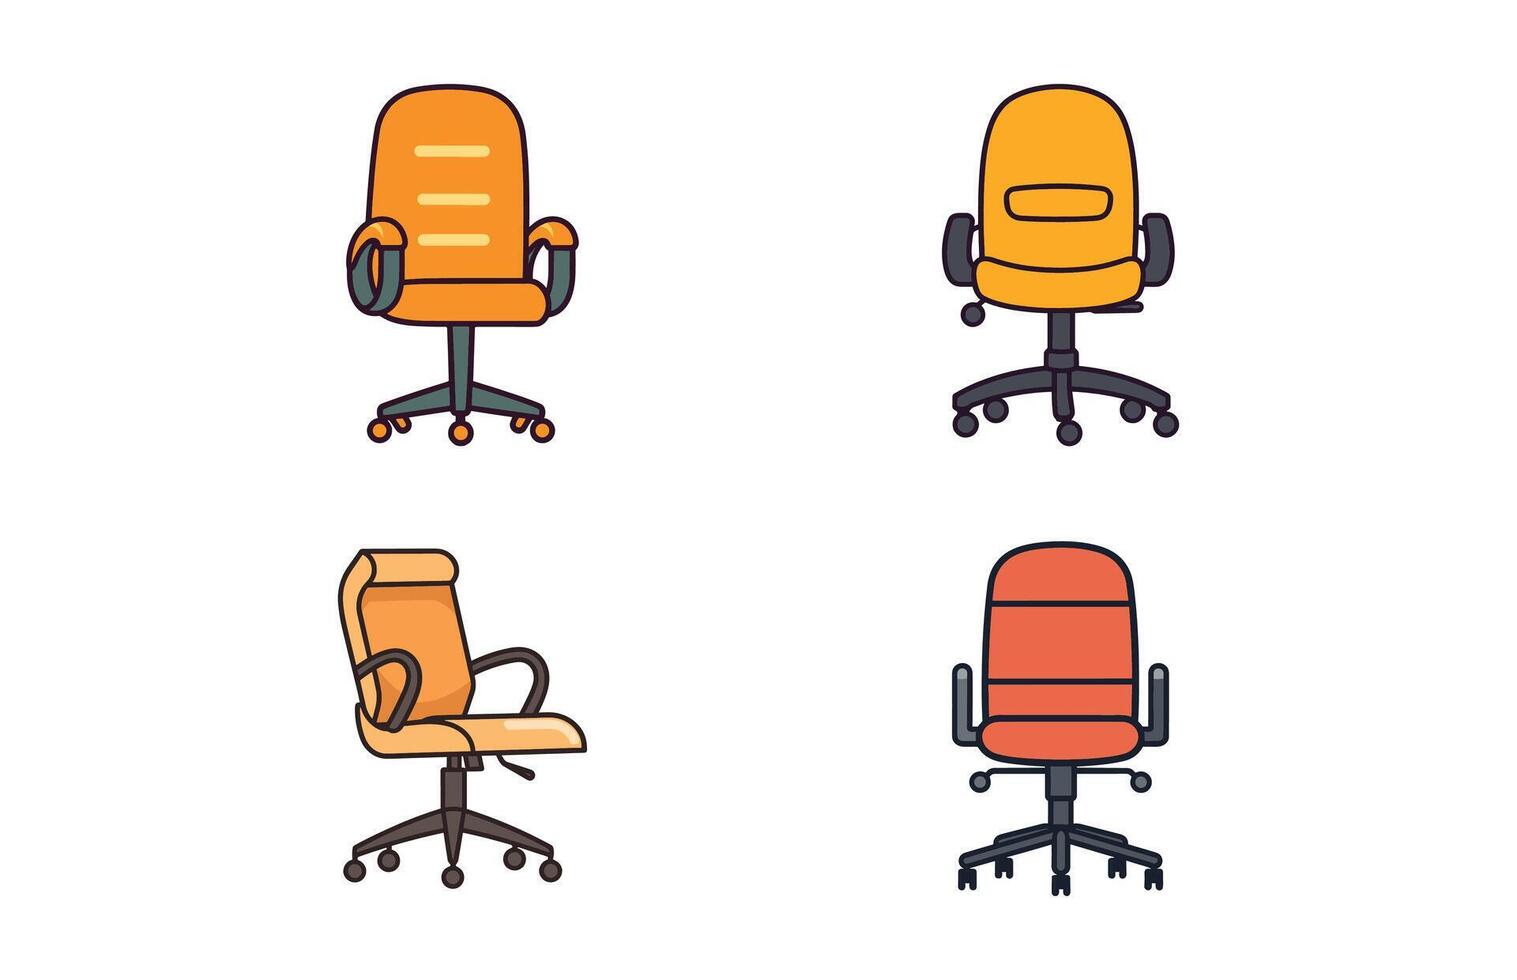 ensemble de différent Bureau chaises vecteur illustration, Bureau chaise ou bureau chaise dans divers points de vue illustration